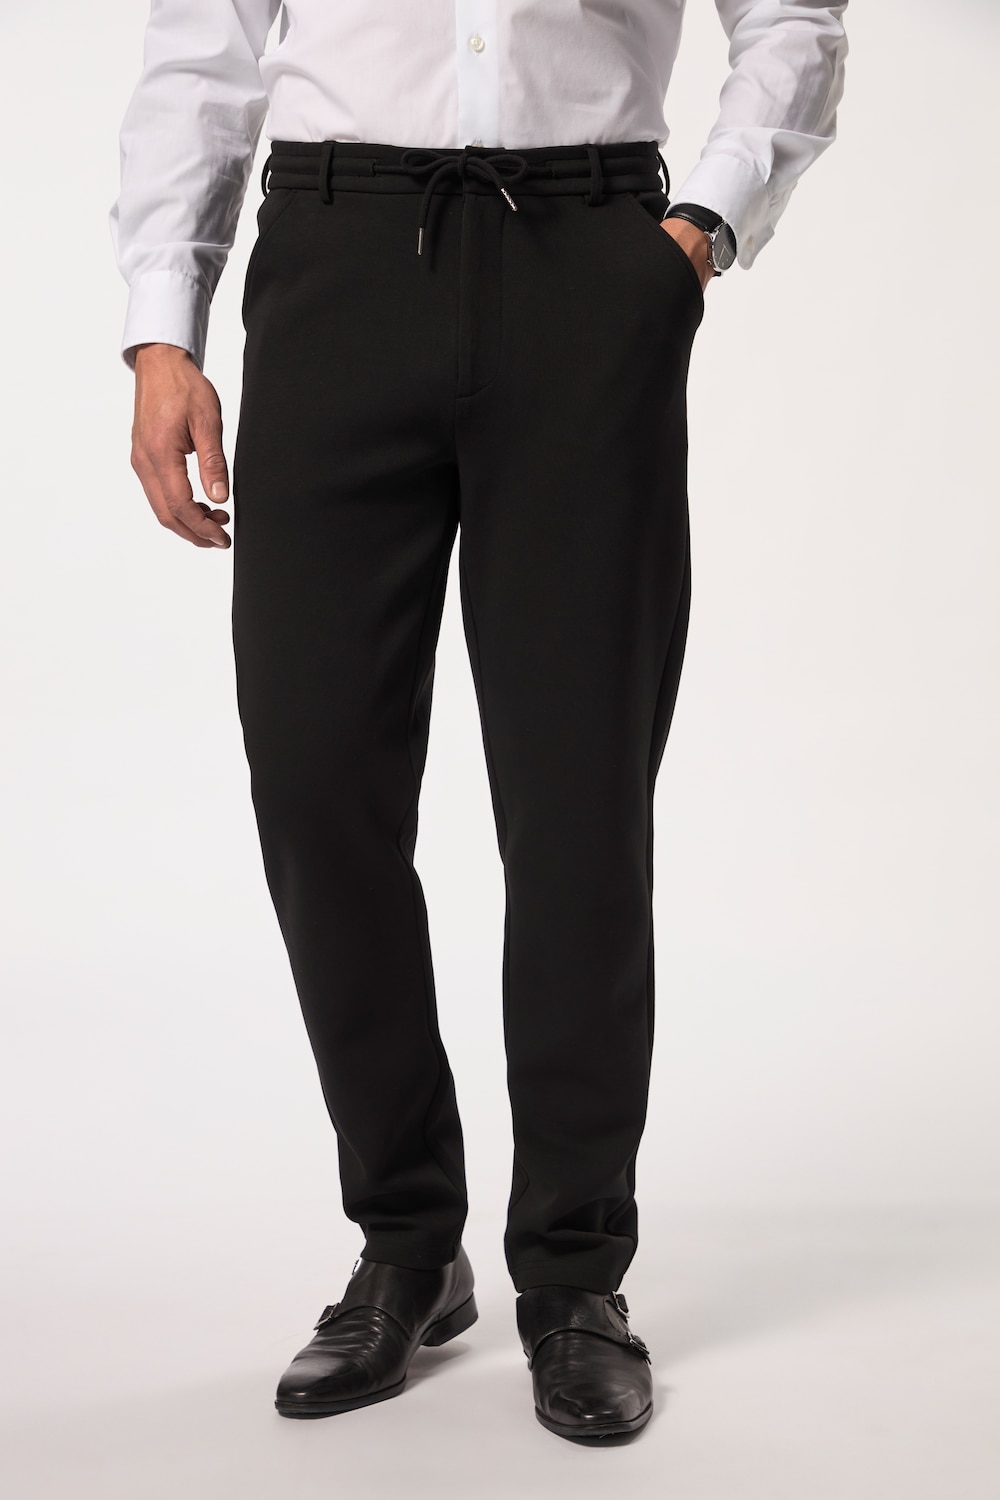 Große Größen Jersey-Hose, Herren, schwarz, Größe: L, Baumwolle/Polyester, JP1880 von JP1880